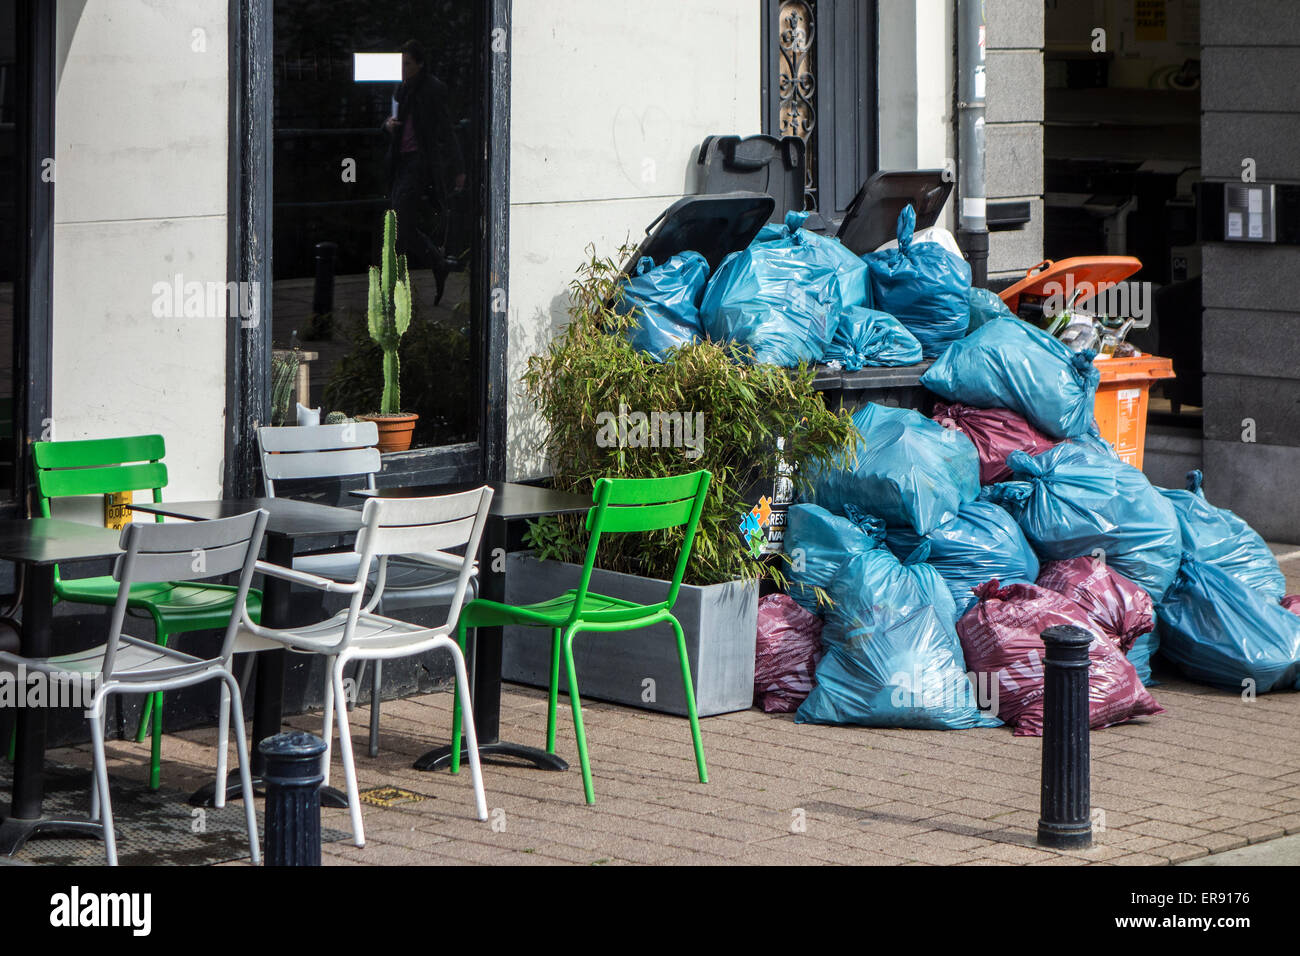 Abfallsäcke und Müllcontainer mit gestapelten Haushalt ablehnen Sperrung Gehweg wegen Streikrecht von Abfallverarbeitung Firma Stockfoto